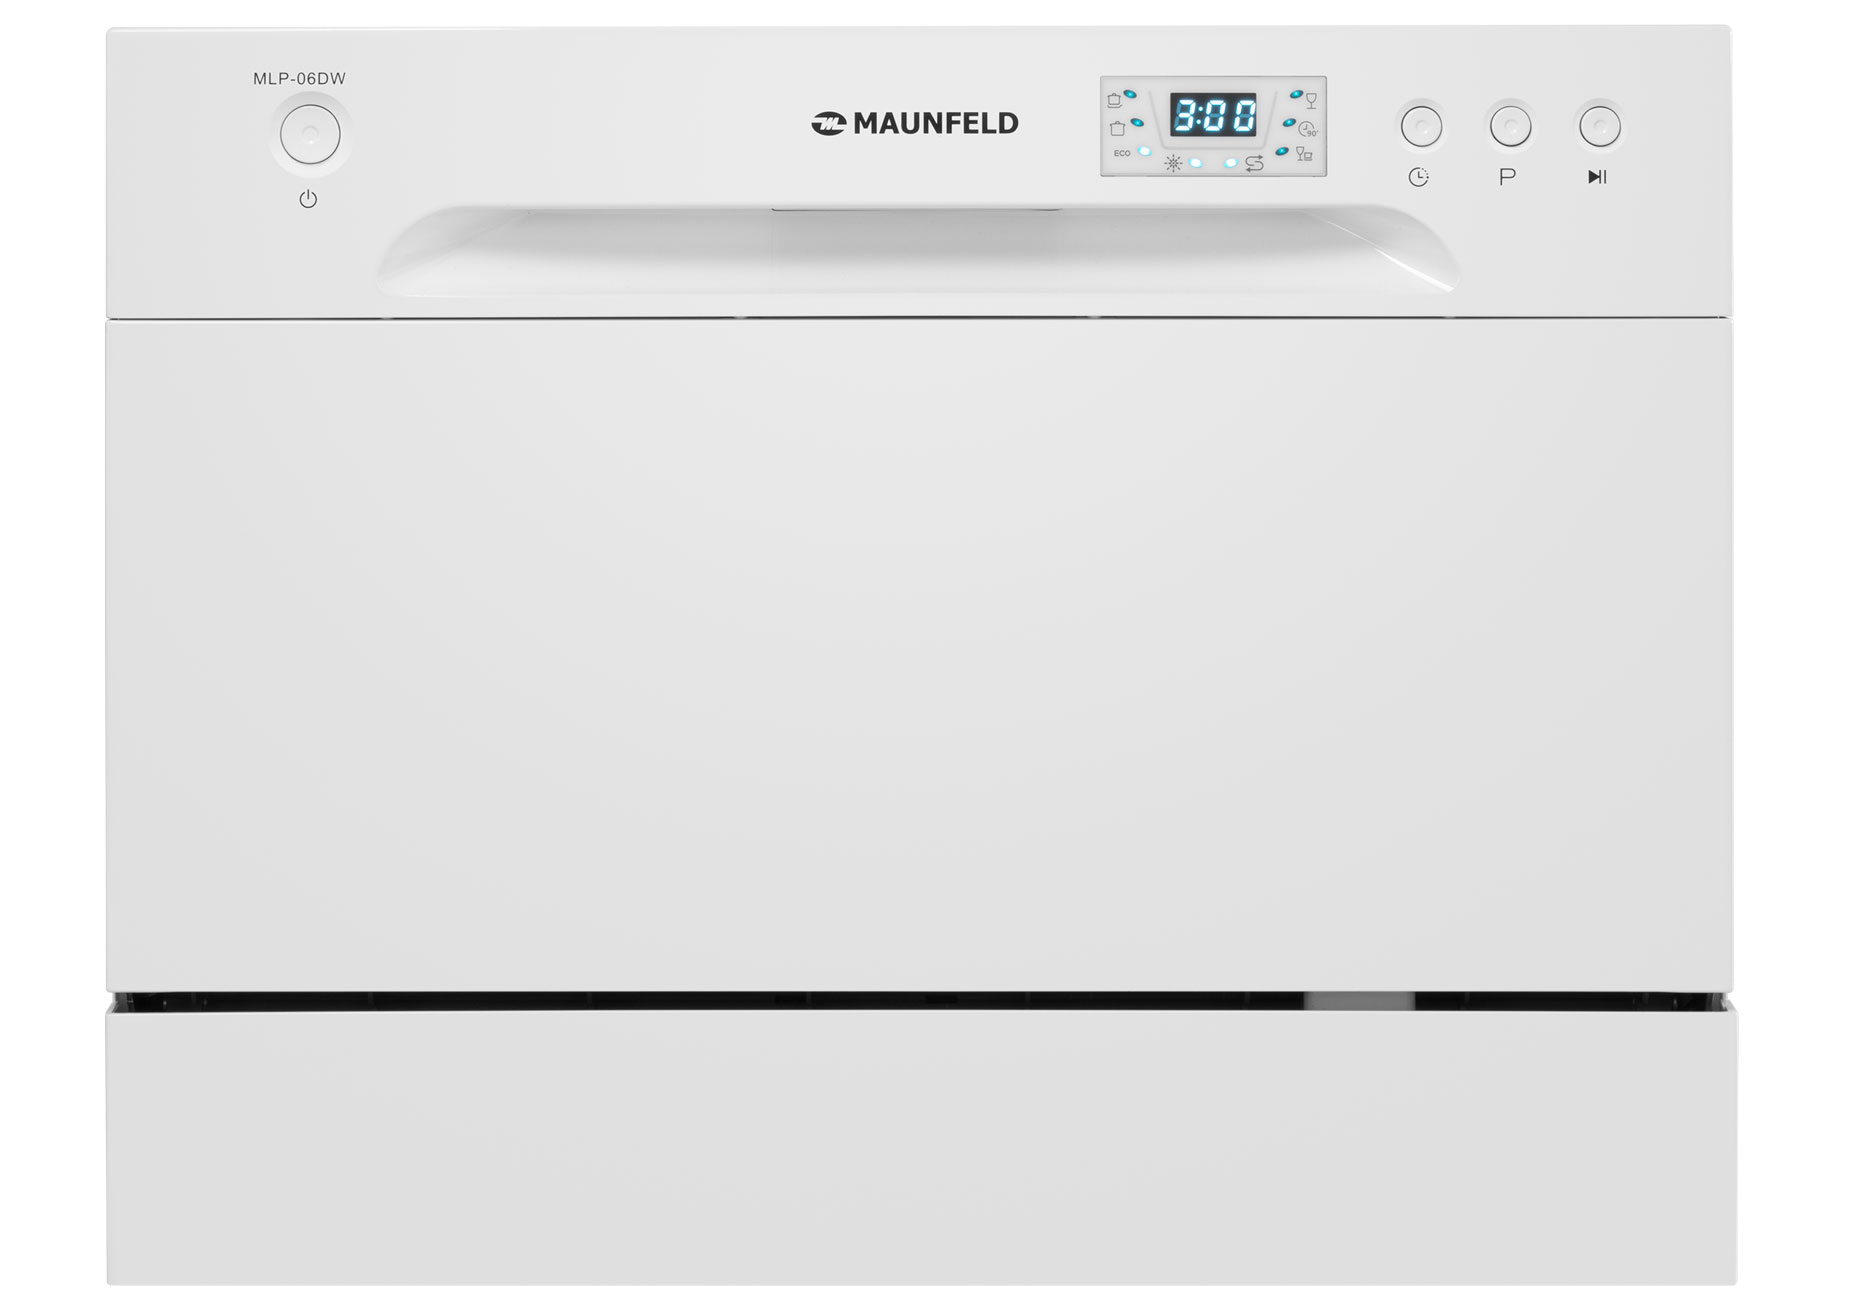 Посудомоечная машина MAUNFELD MLP-06DW белый большой подарок любимой дочке дмитриева в г